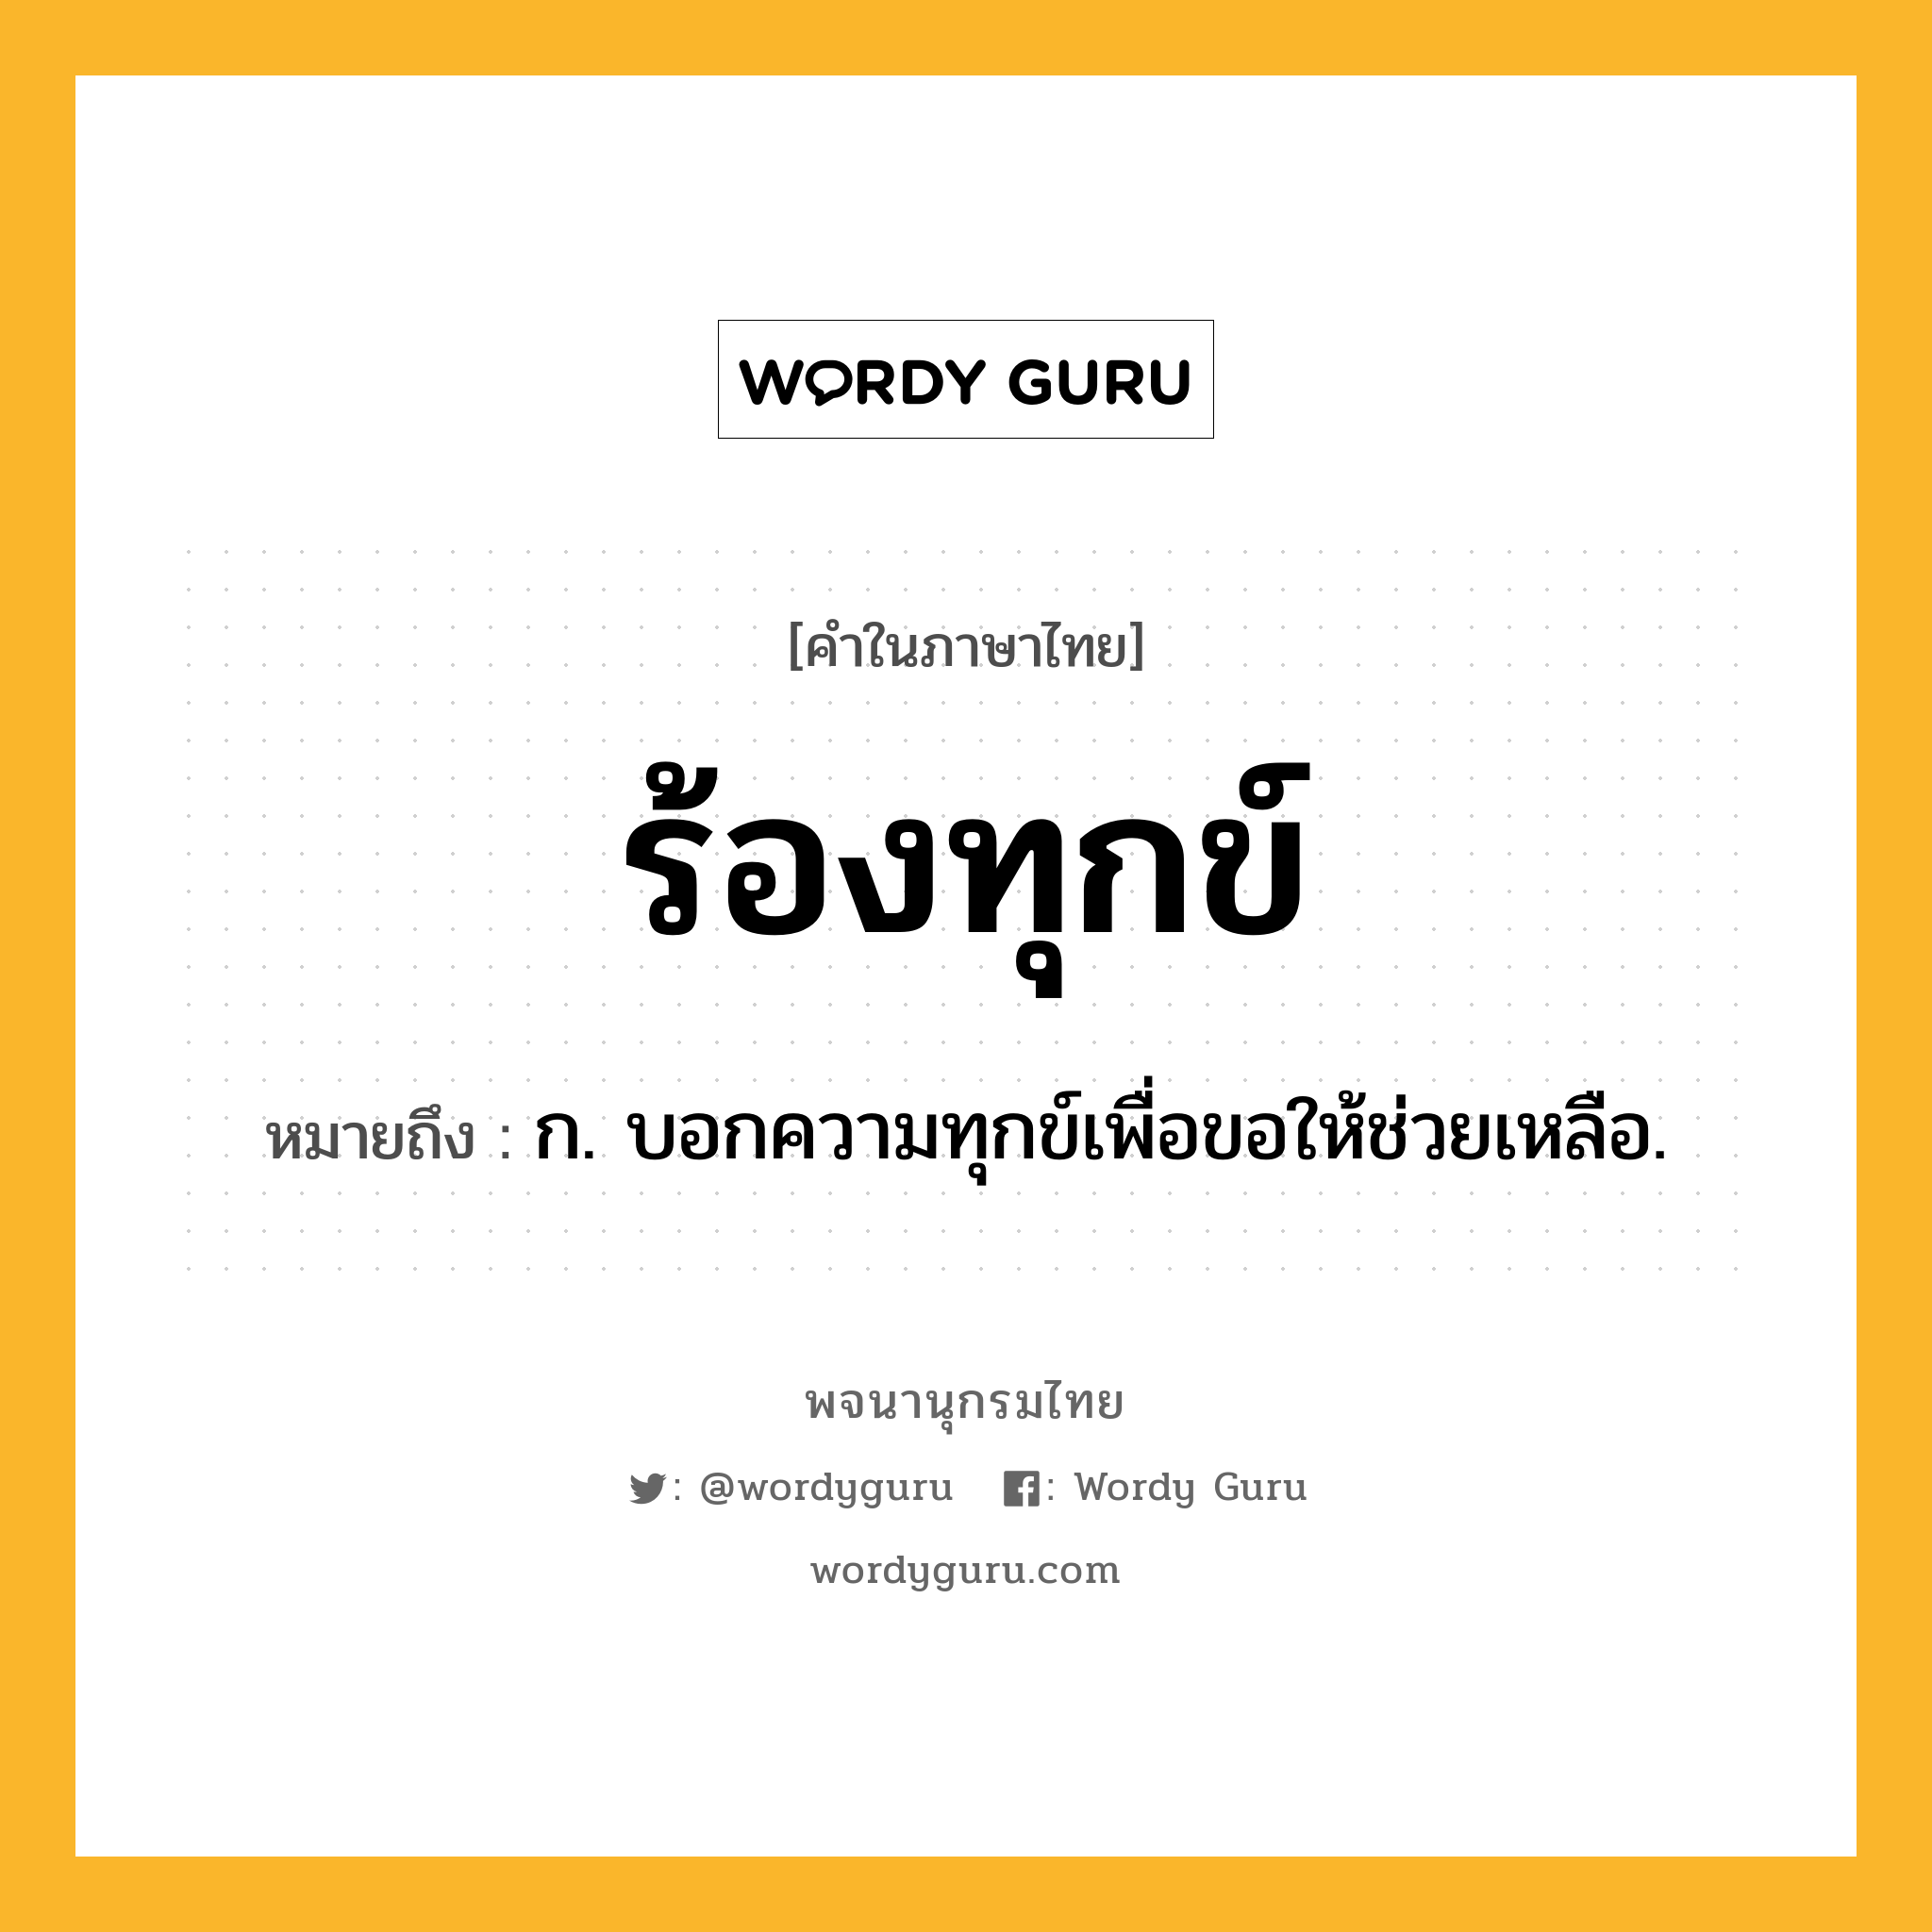 ร้องทุกข์ หมายถึงอะไร?, คำในภาษาไทย ร้องทุกข์ หมายถึง ก. บอกความทุกข์เพื่อขอให้ช่วยเหลือ.